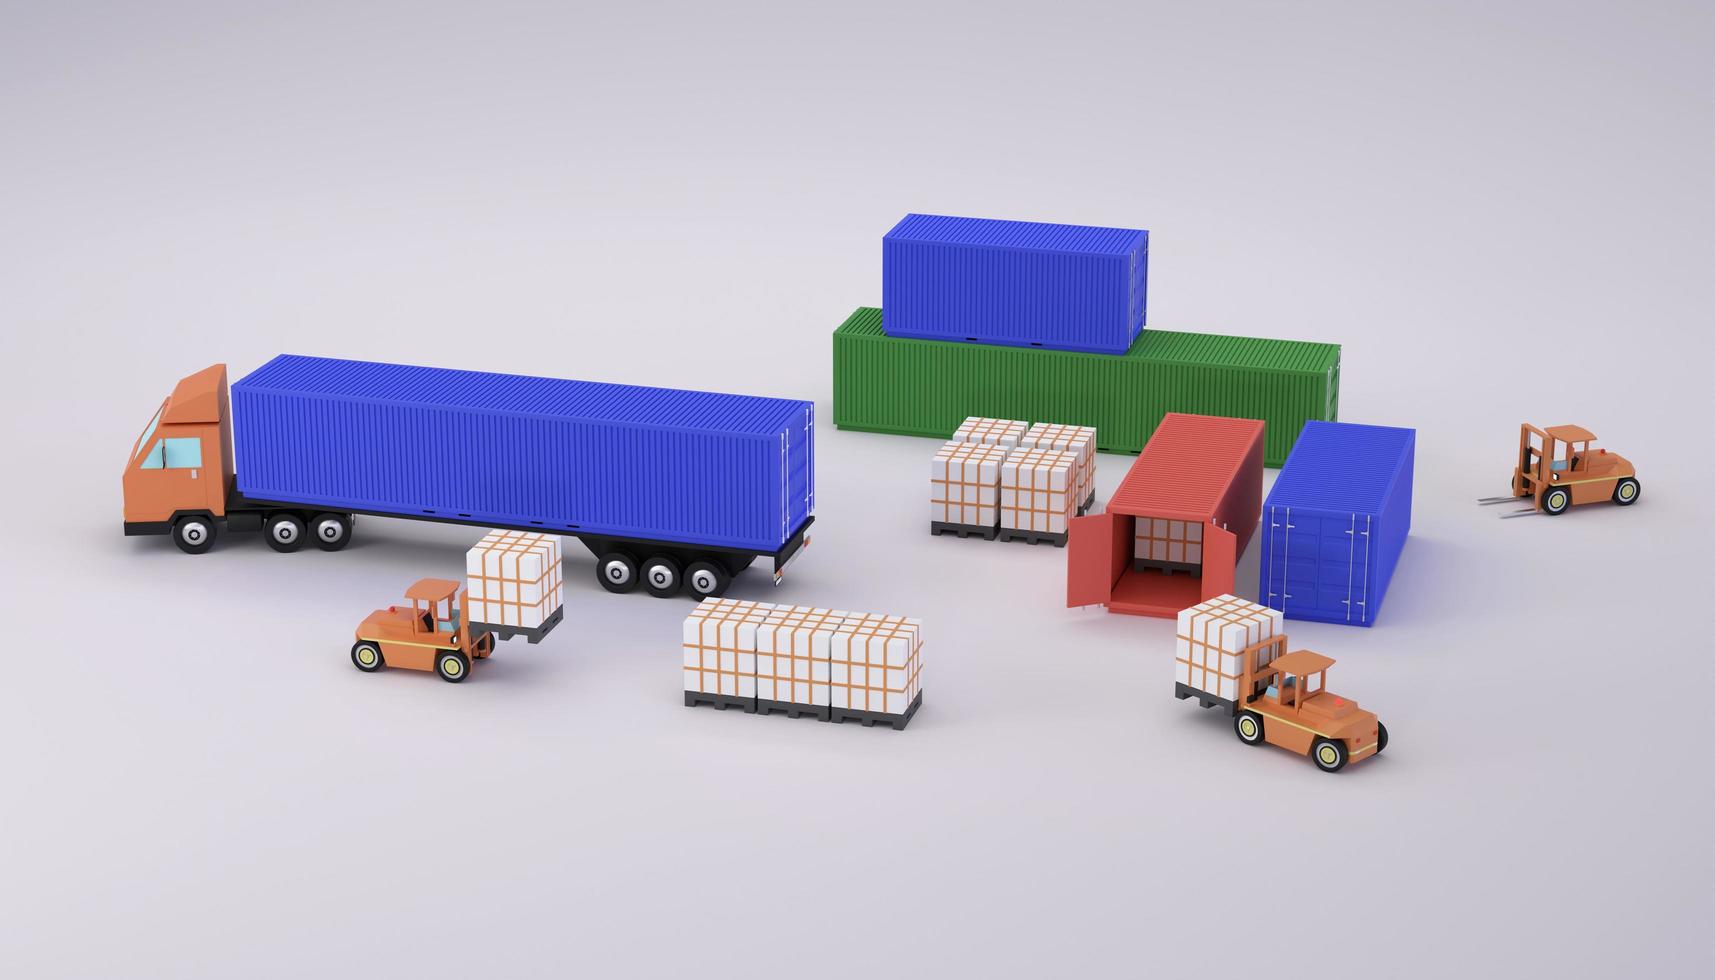 carrello elevatore carico pallet di carico in camion 3d rendering illustrazione foto